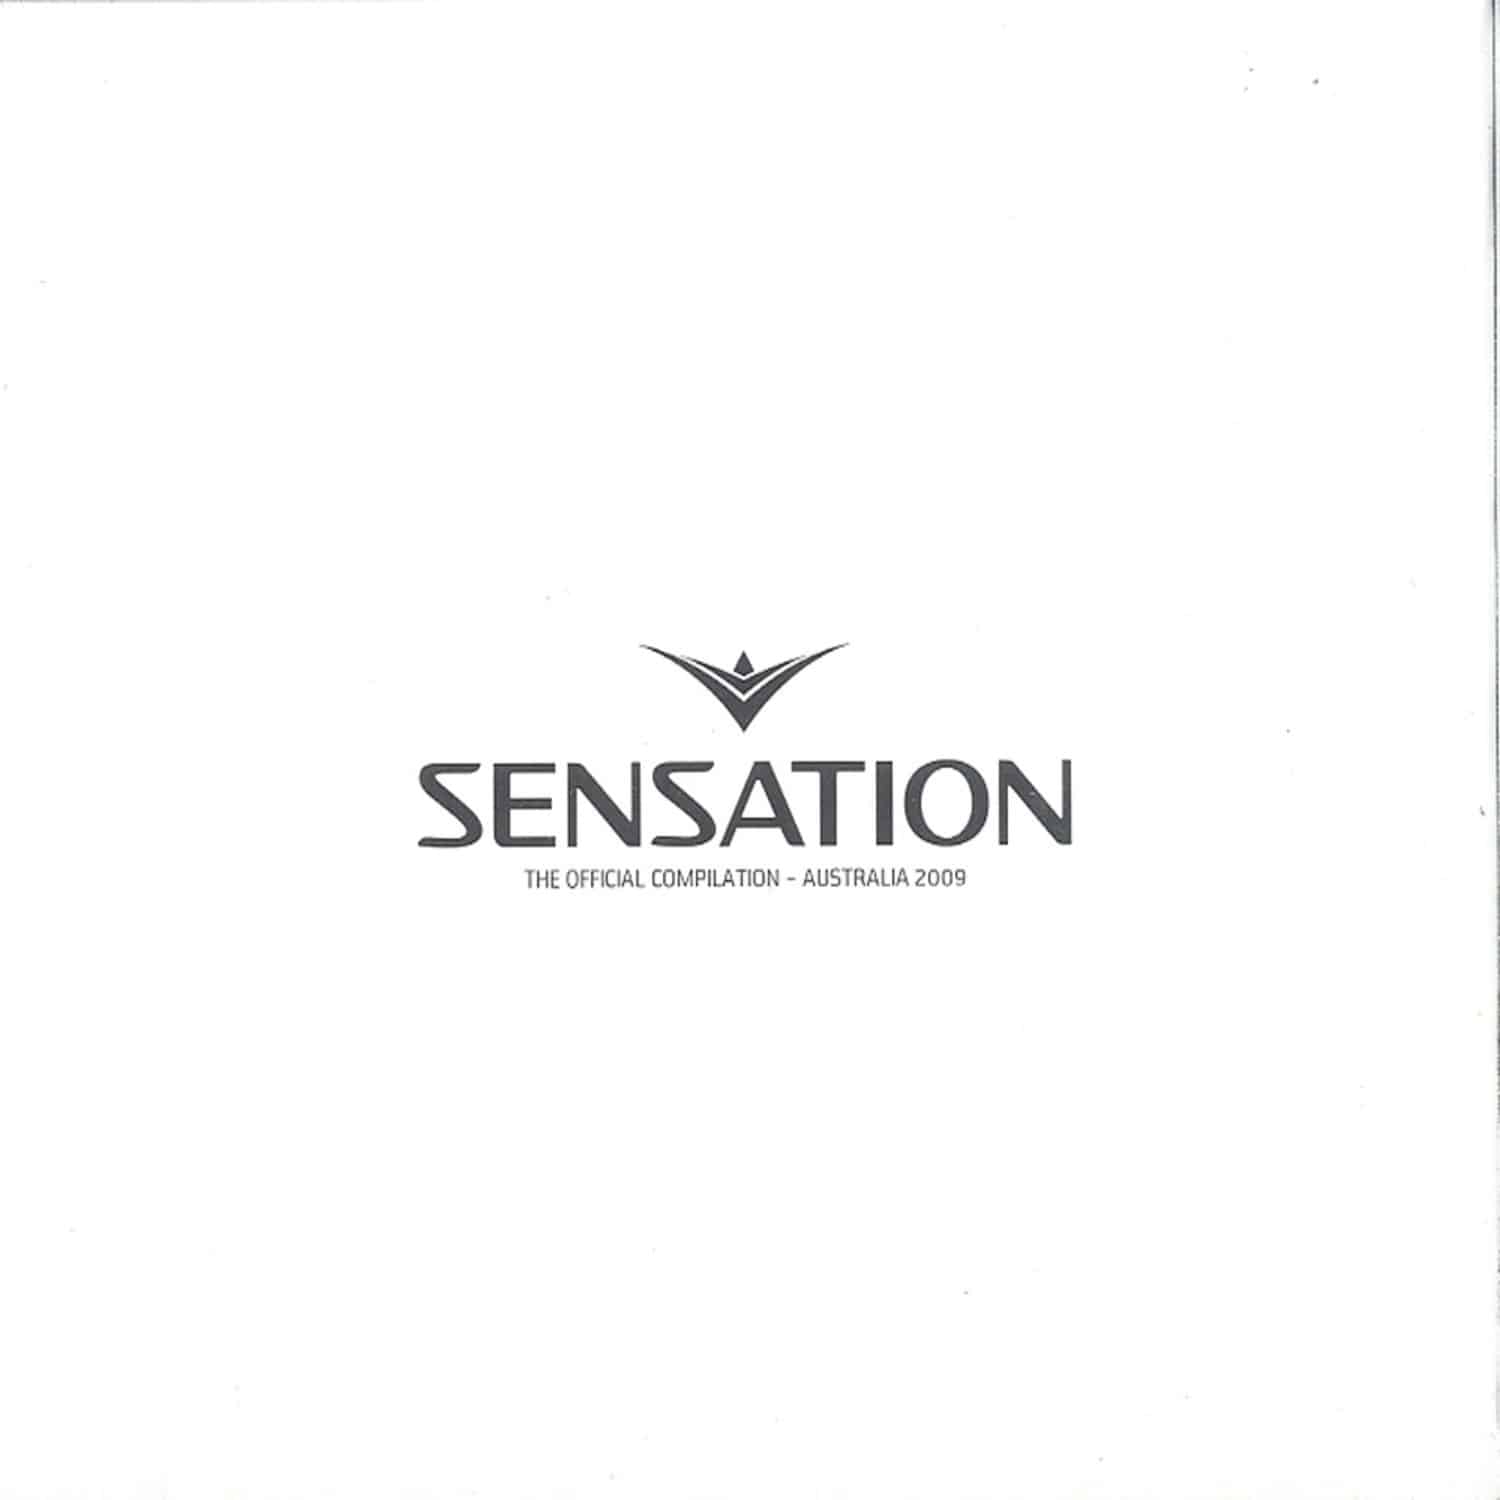 The Official Compilation - SENSATION AUSTRALIA 2009 